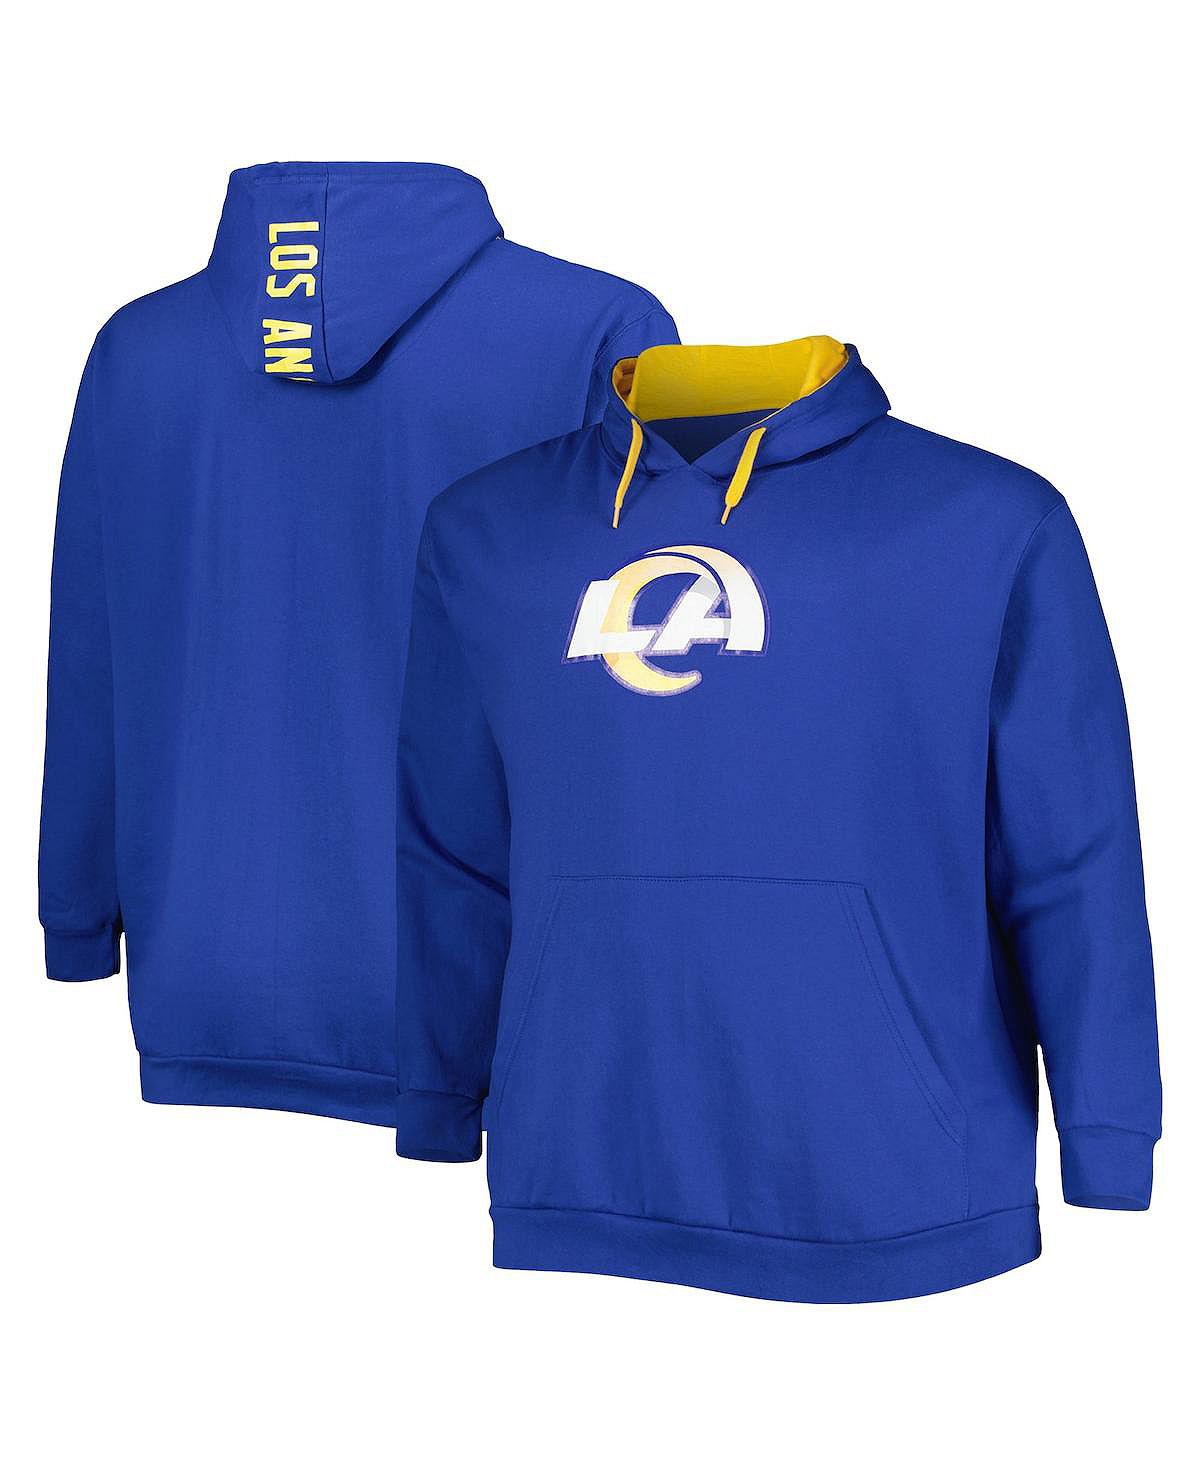 Мужской пуловер с капюшоном и логотипом Royal Los Angeles Rams Big and Tall Profile толстовка most los angeles средней длины размер 152 синий